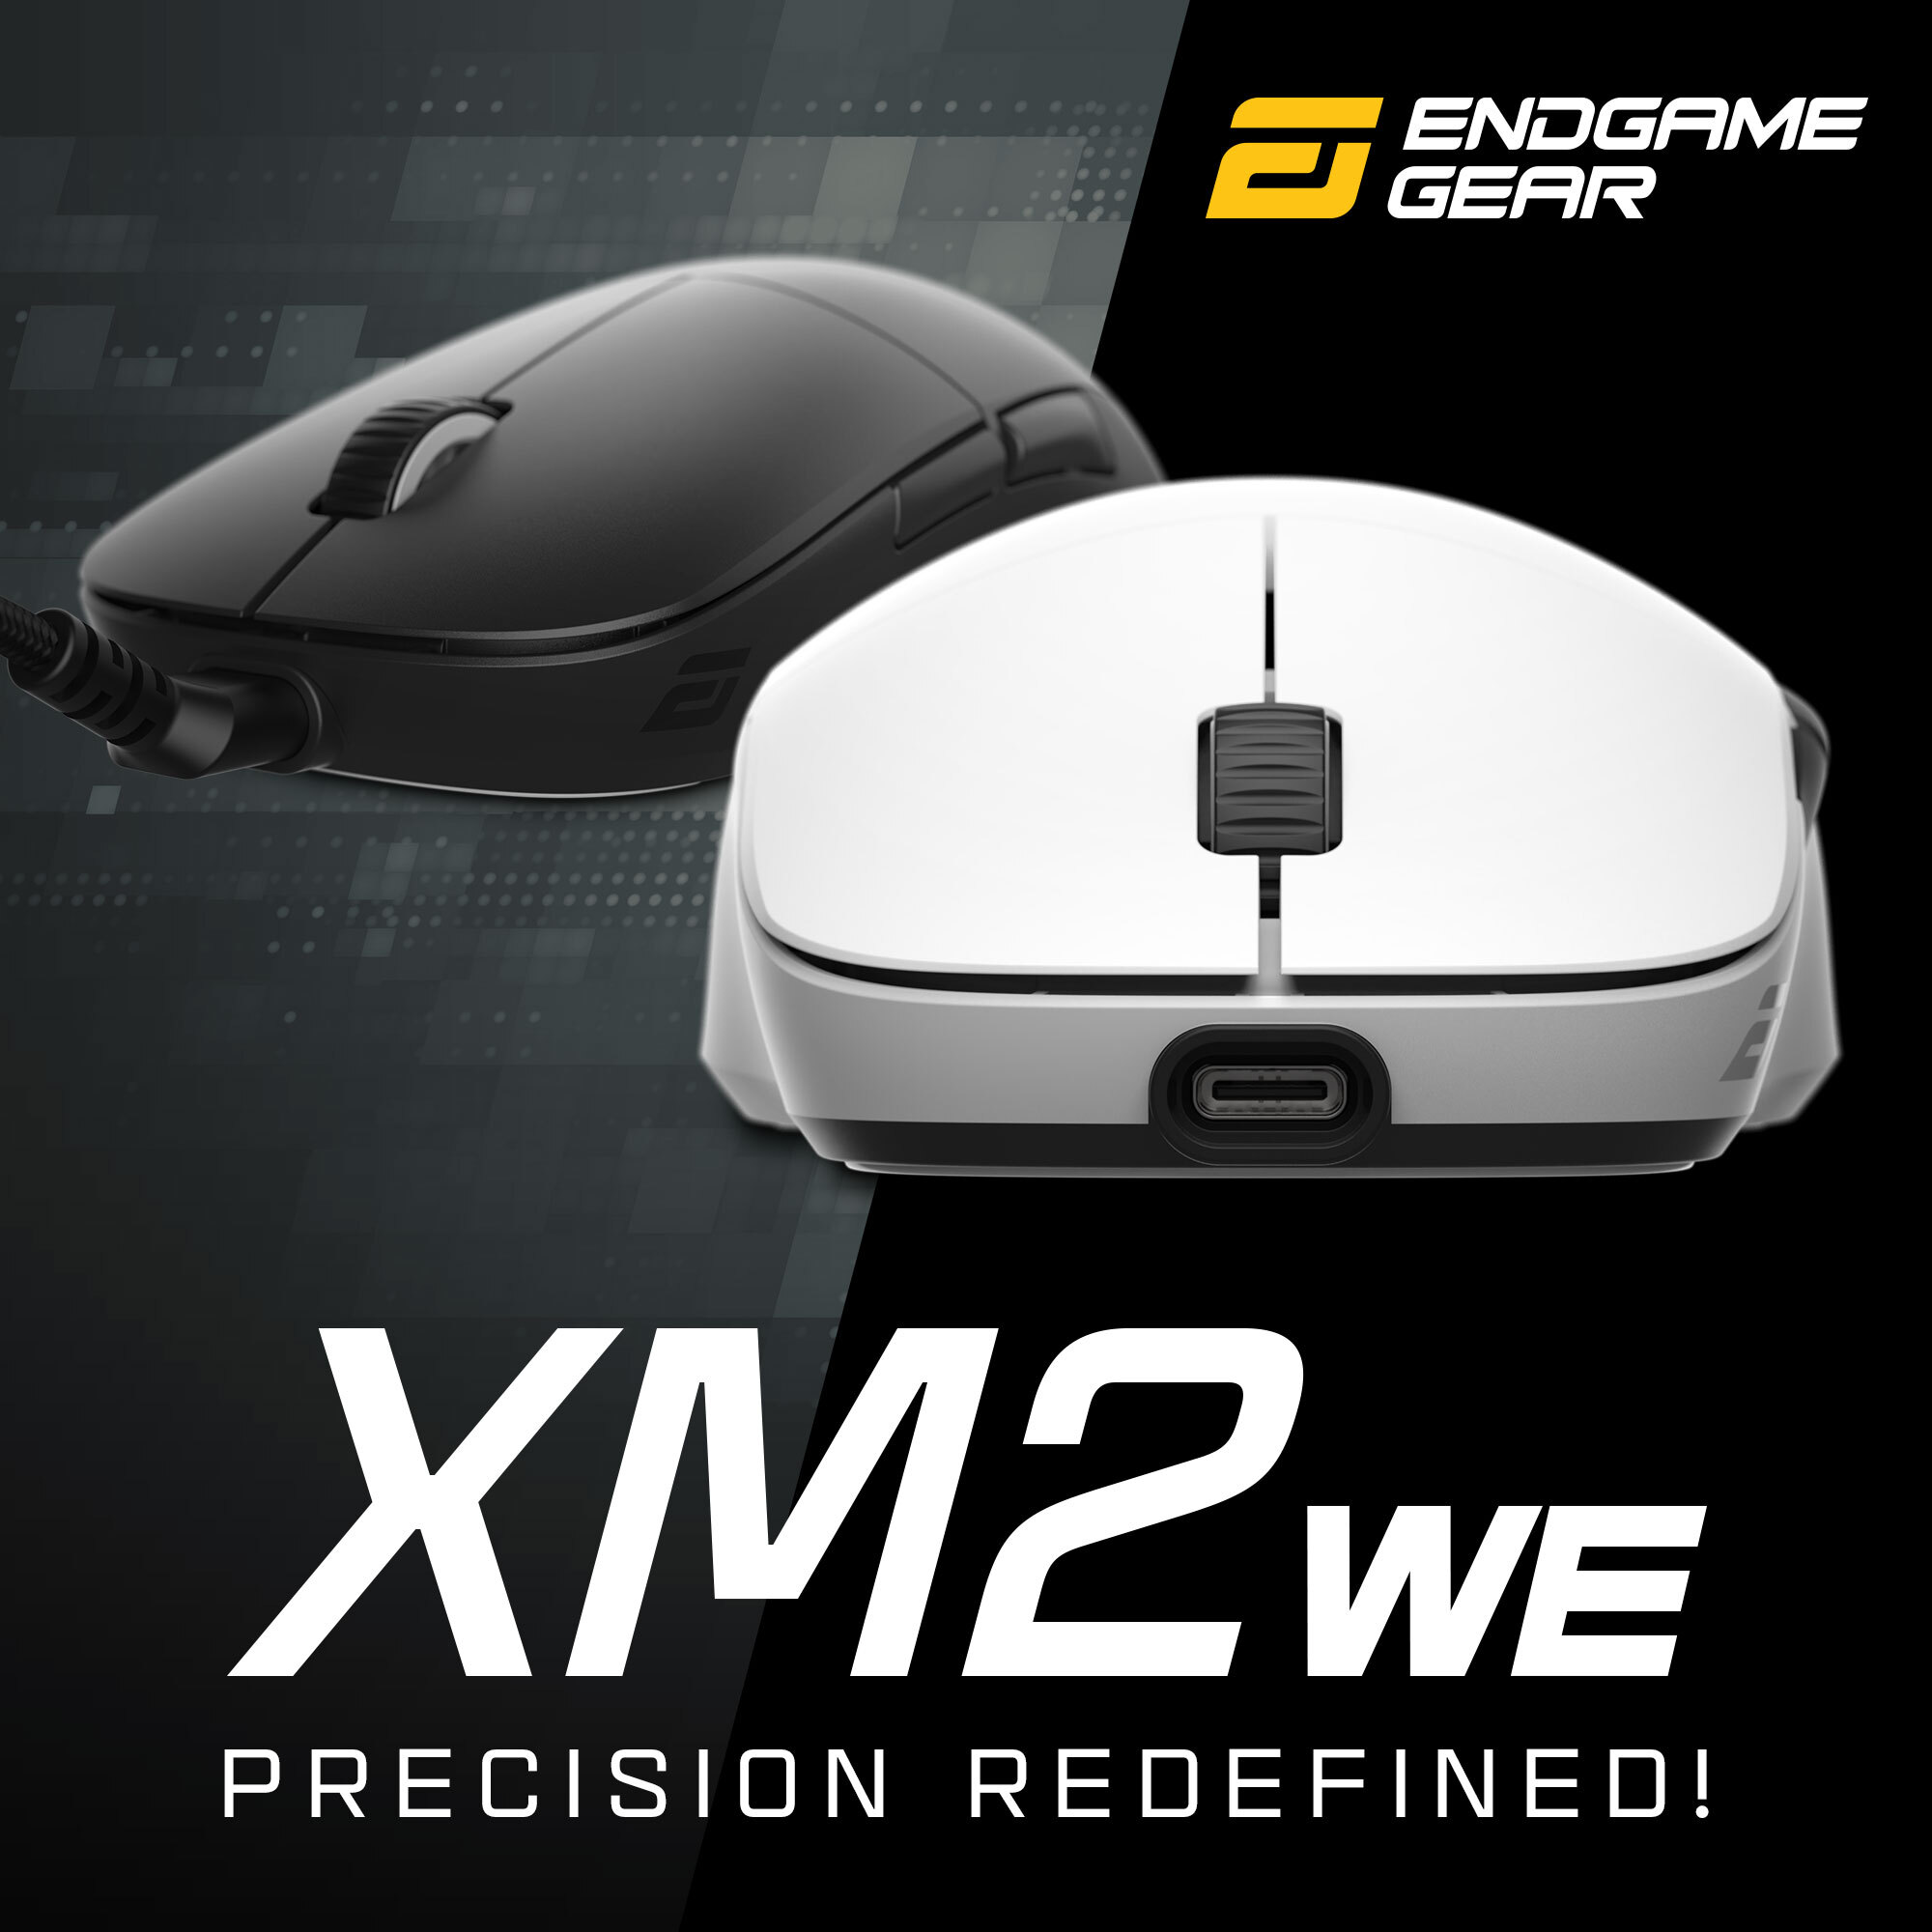 Endgame gear XM2we